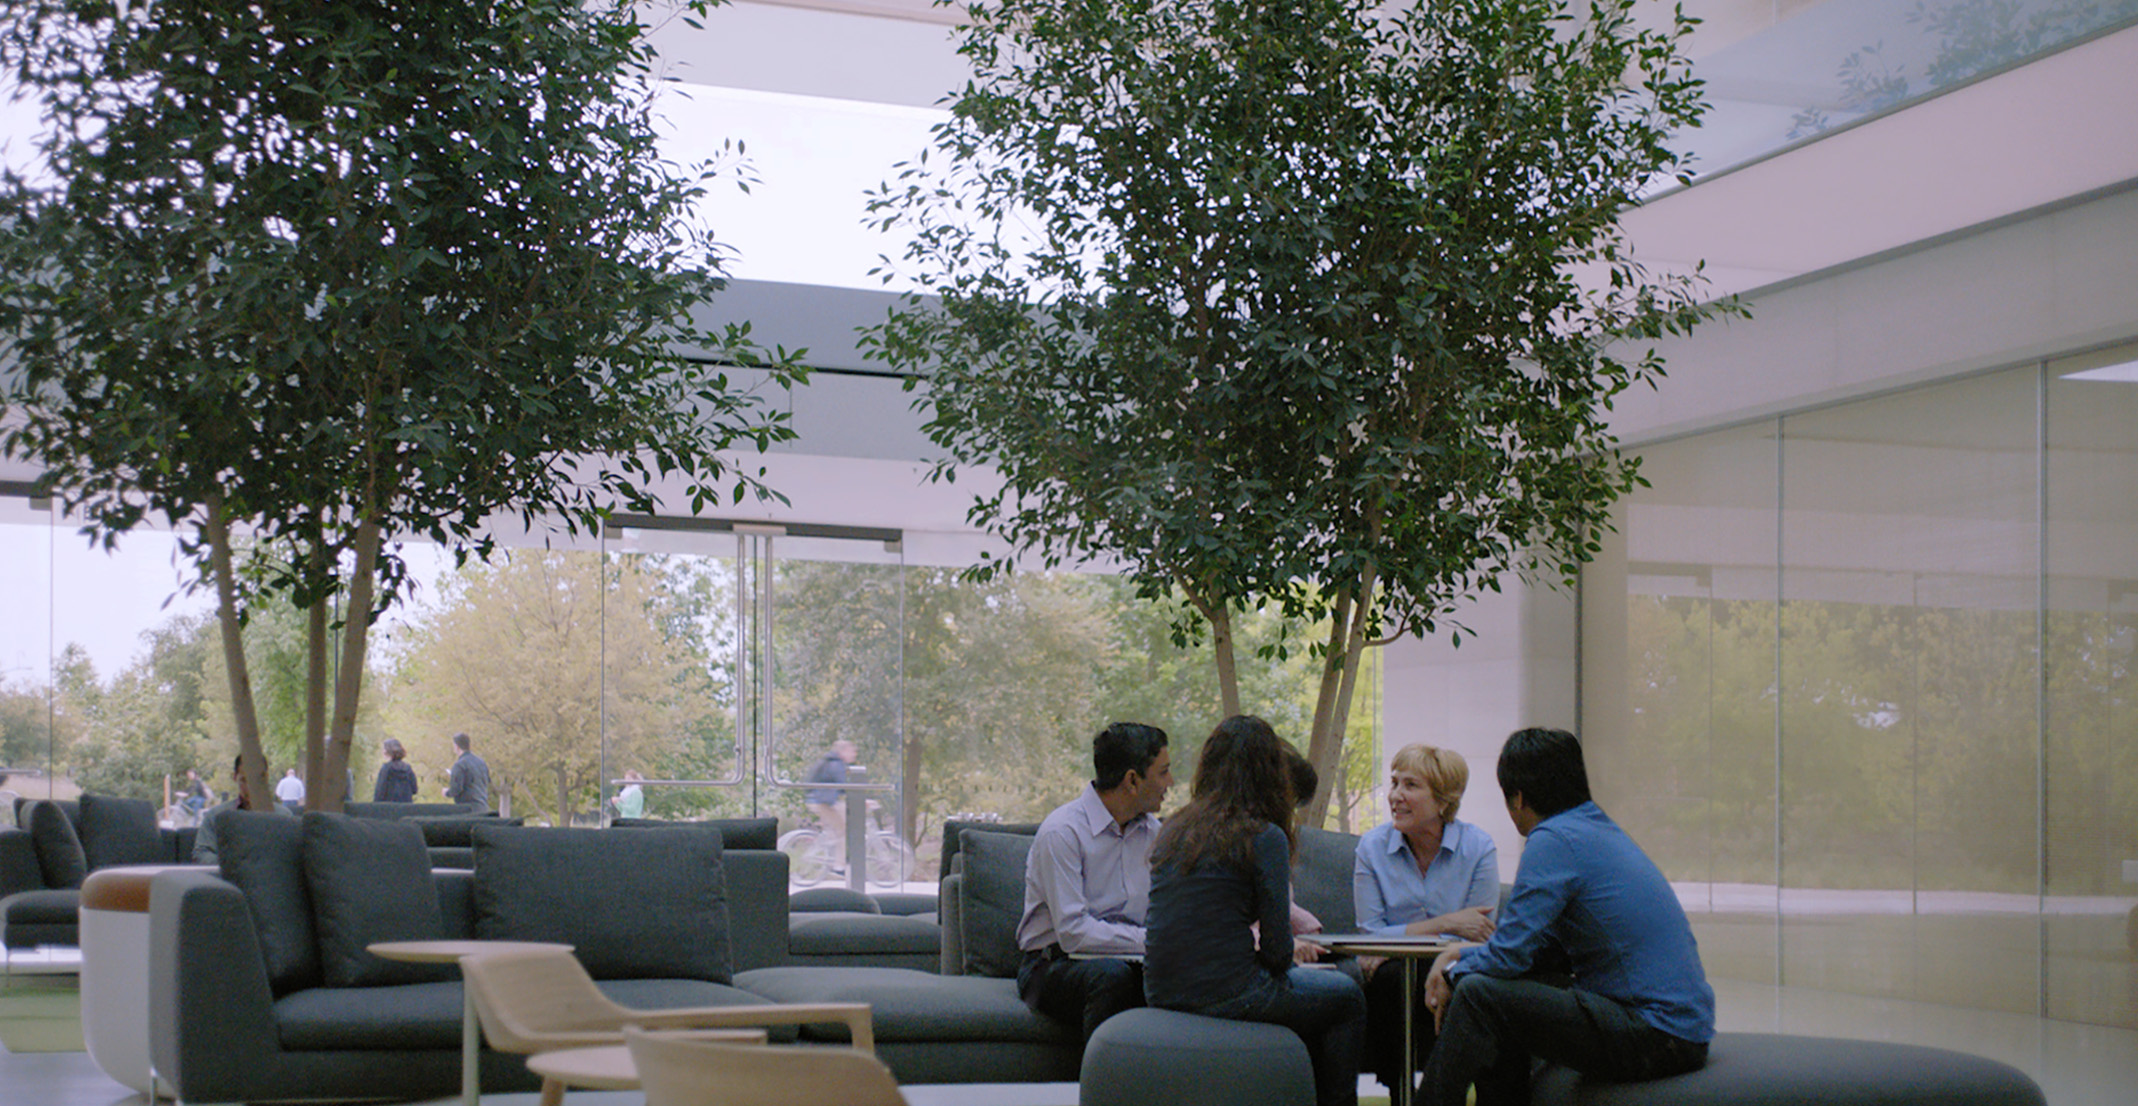 Giulia, qui dirige une équipe de traitement du langage naturel, est assise à une table avec d’autres employés d’Apple.